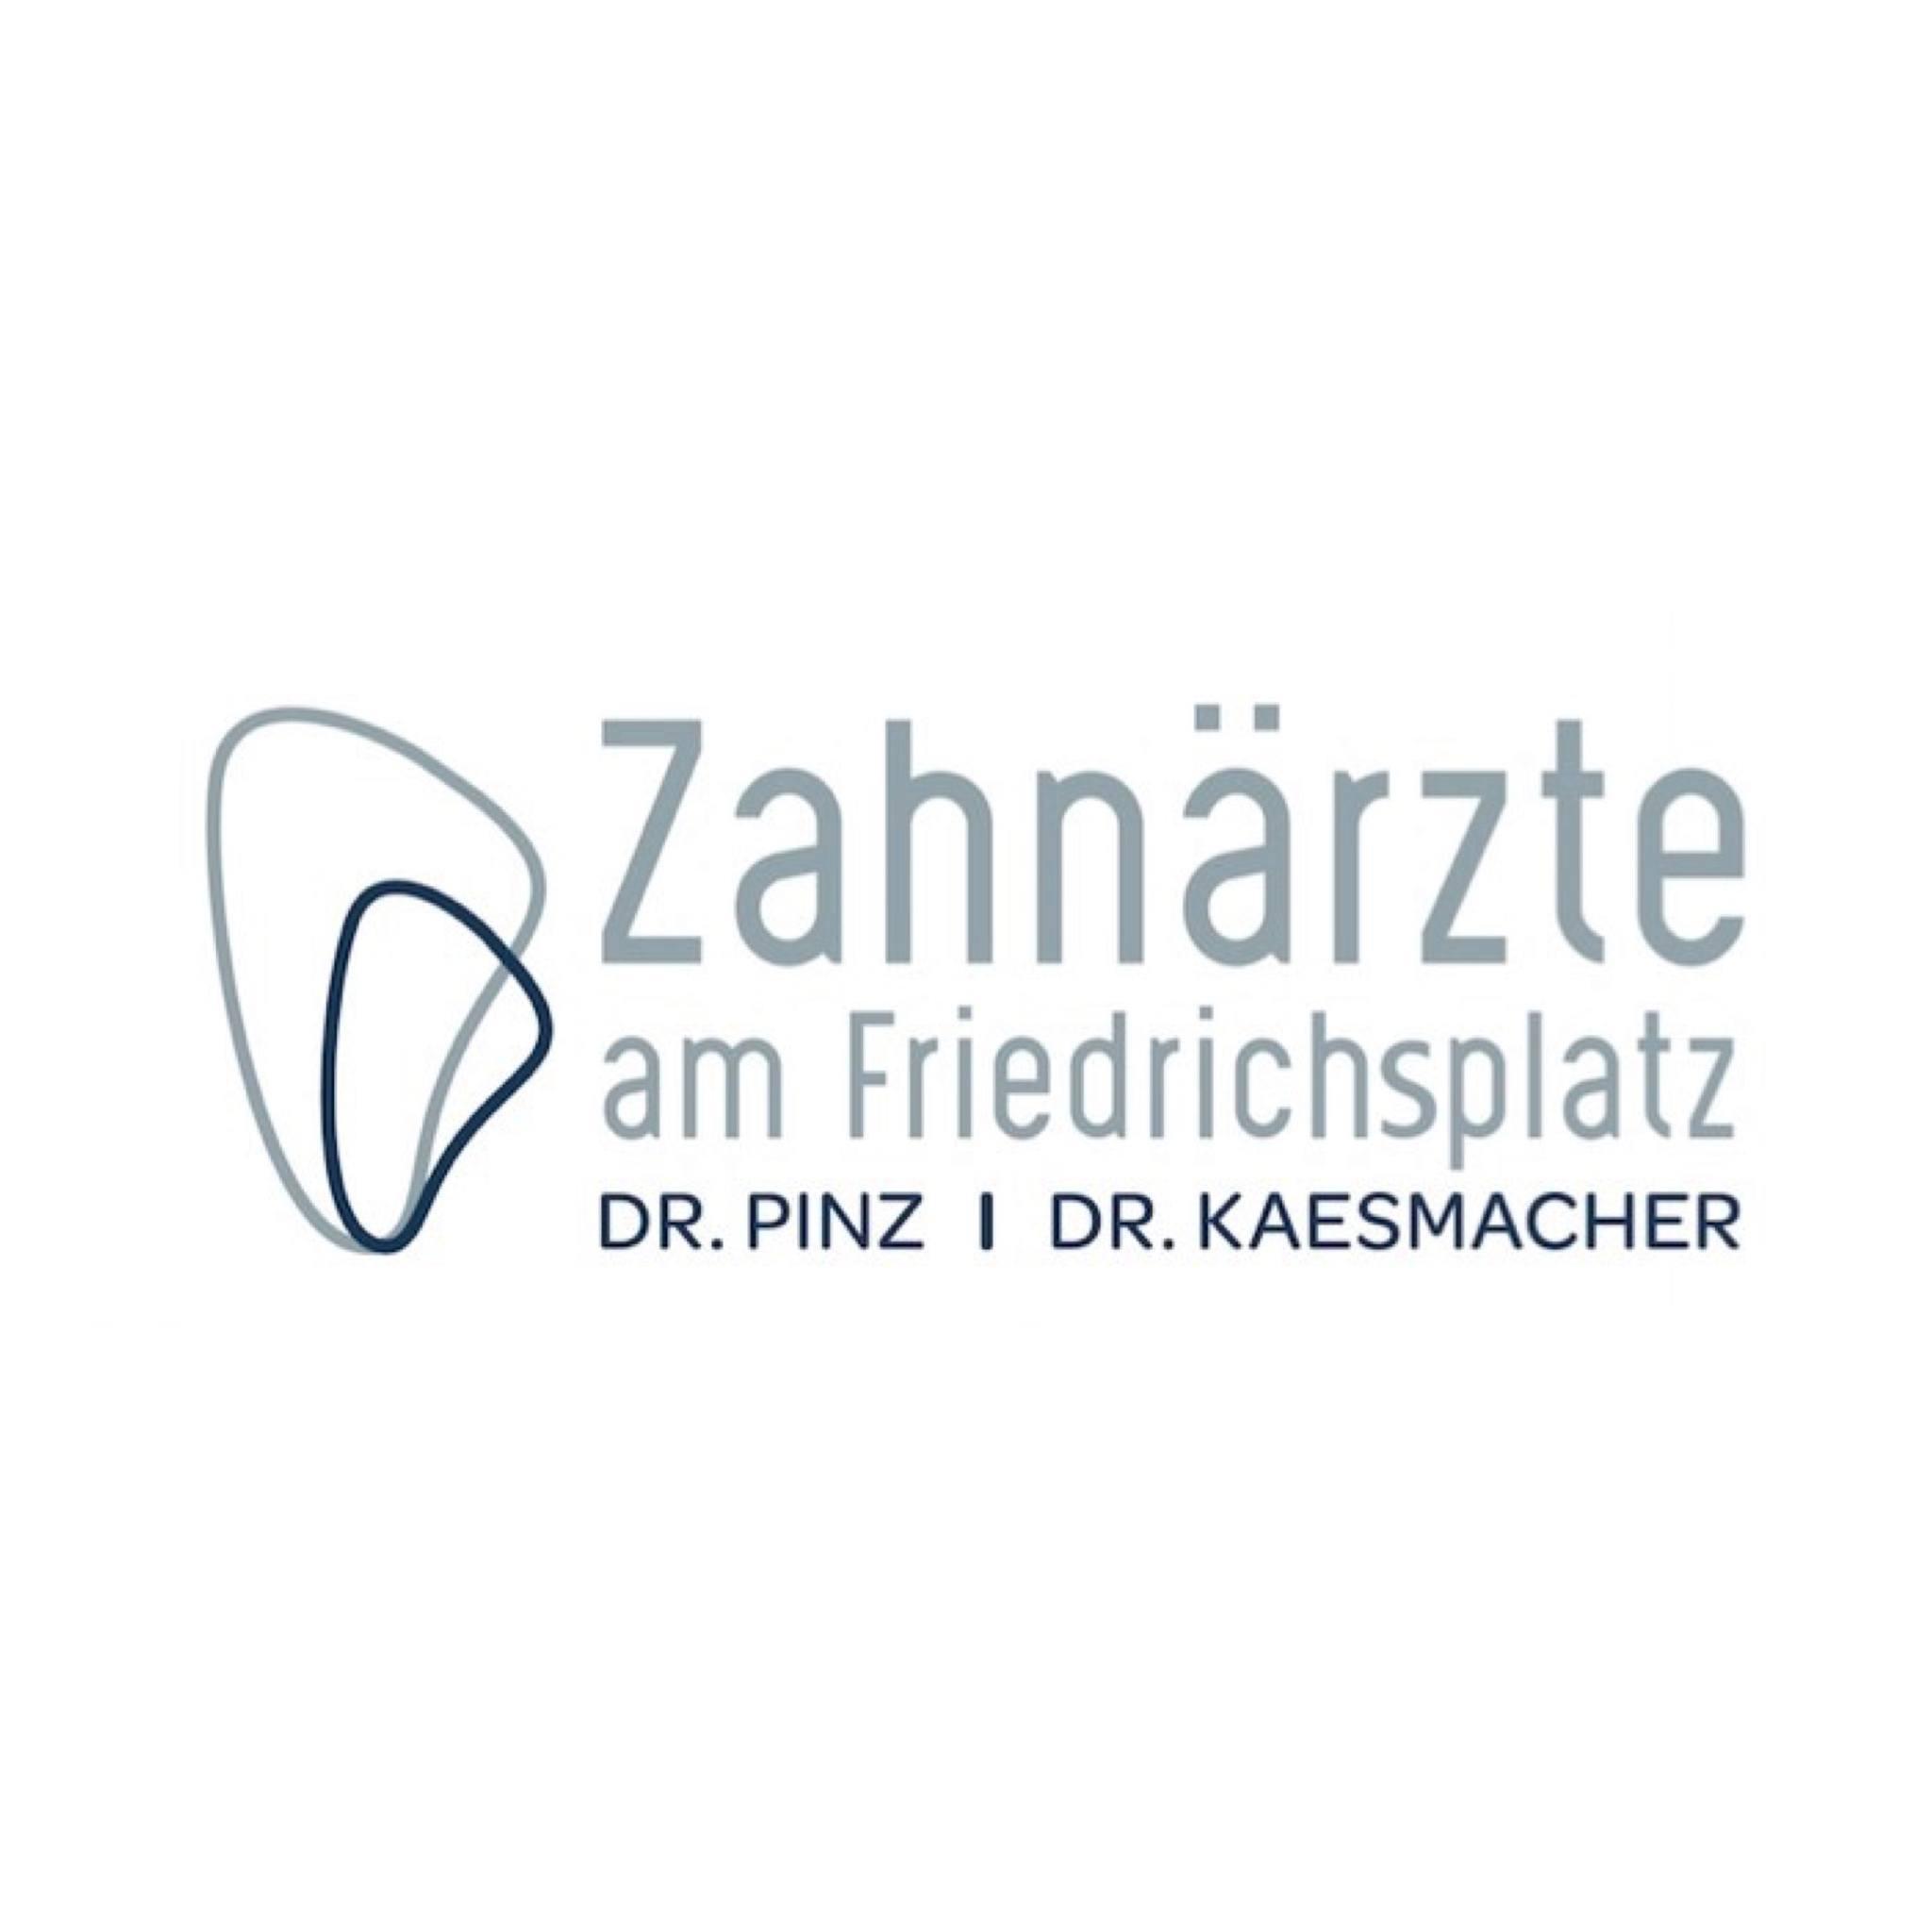 Zahnärzte am Friedrichsplatz in Krefeld - Logo